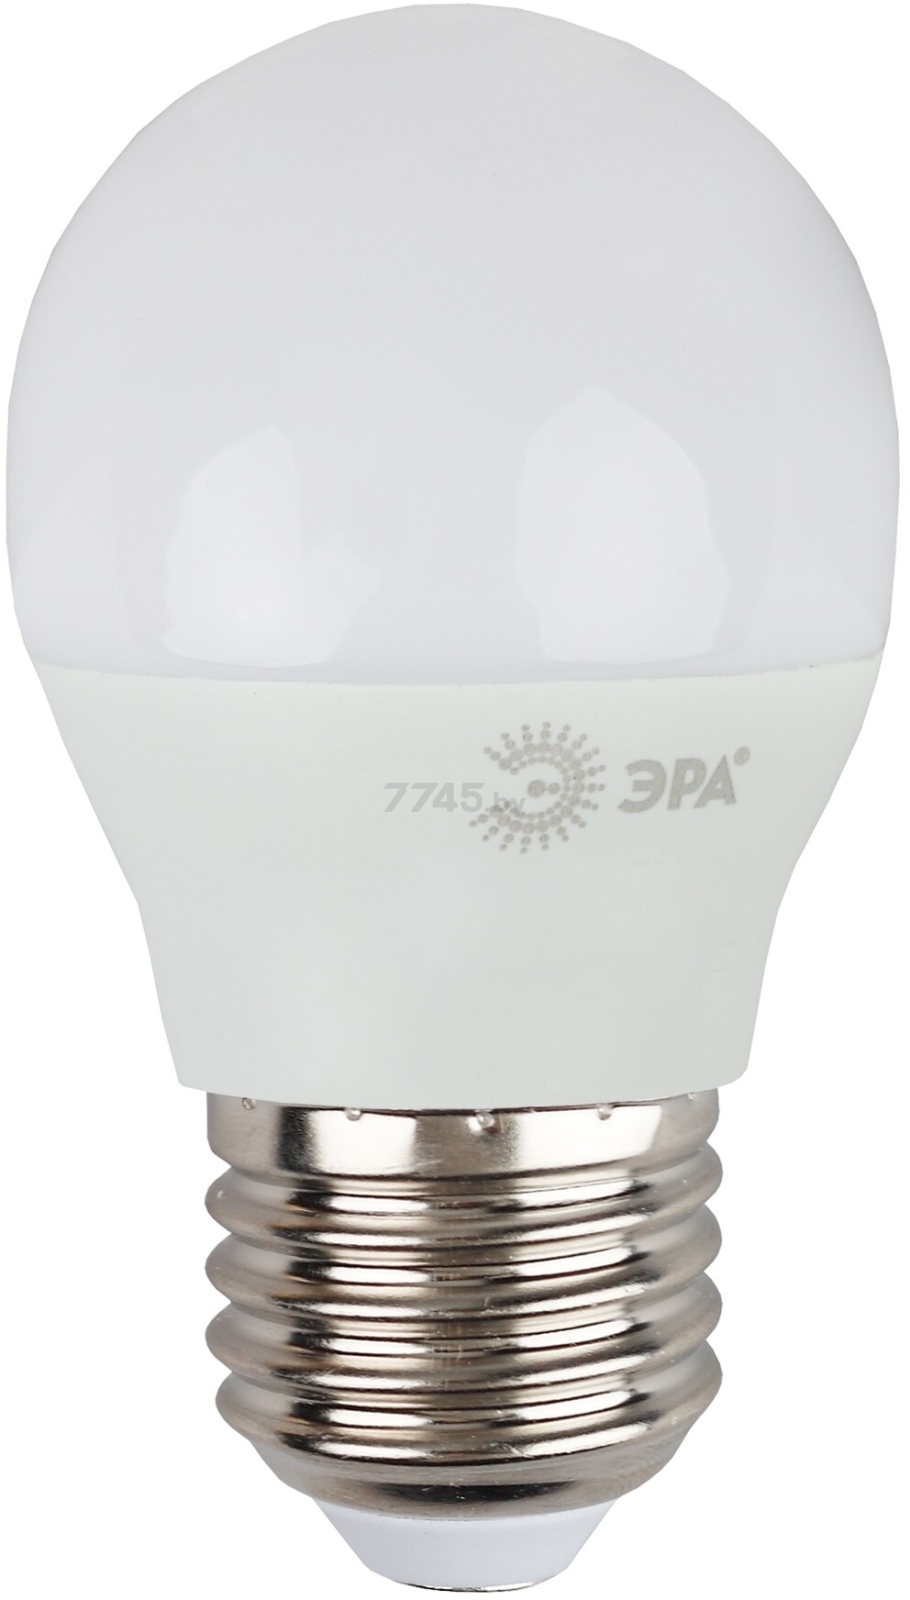 Лампа светодиодная Е27 ЭРА STD Led 9 Вт Р45 2700К (P45-9W-827-E27)